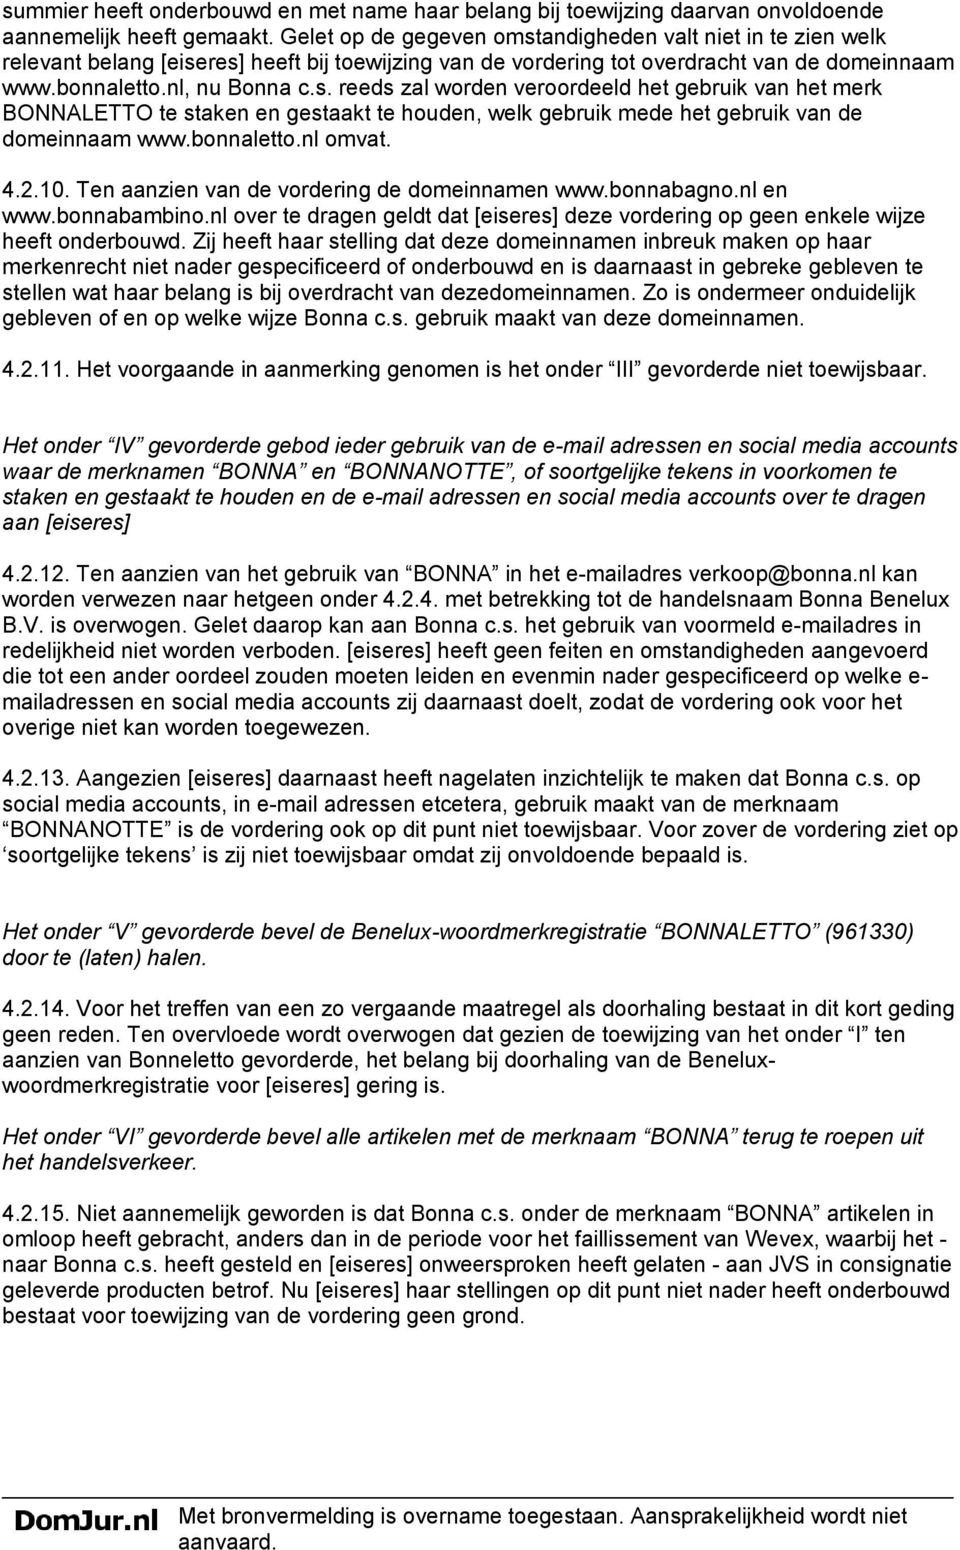 bonnaletto.nl omvat. 4.2.10. Ten aanzien van de vordering de domeinnamen www.bonnabagno.nl en www.bonnabambino.